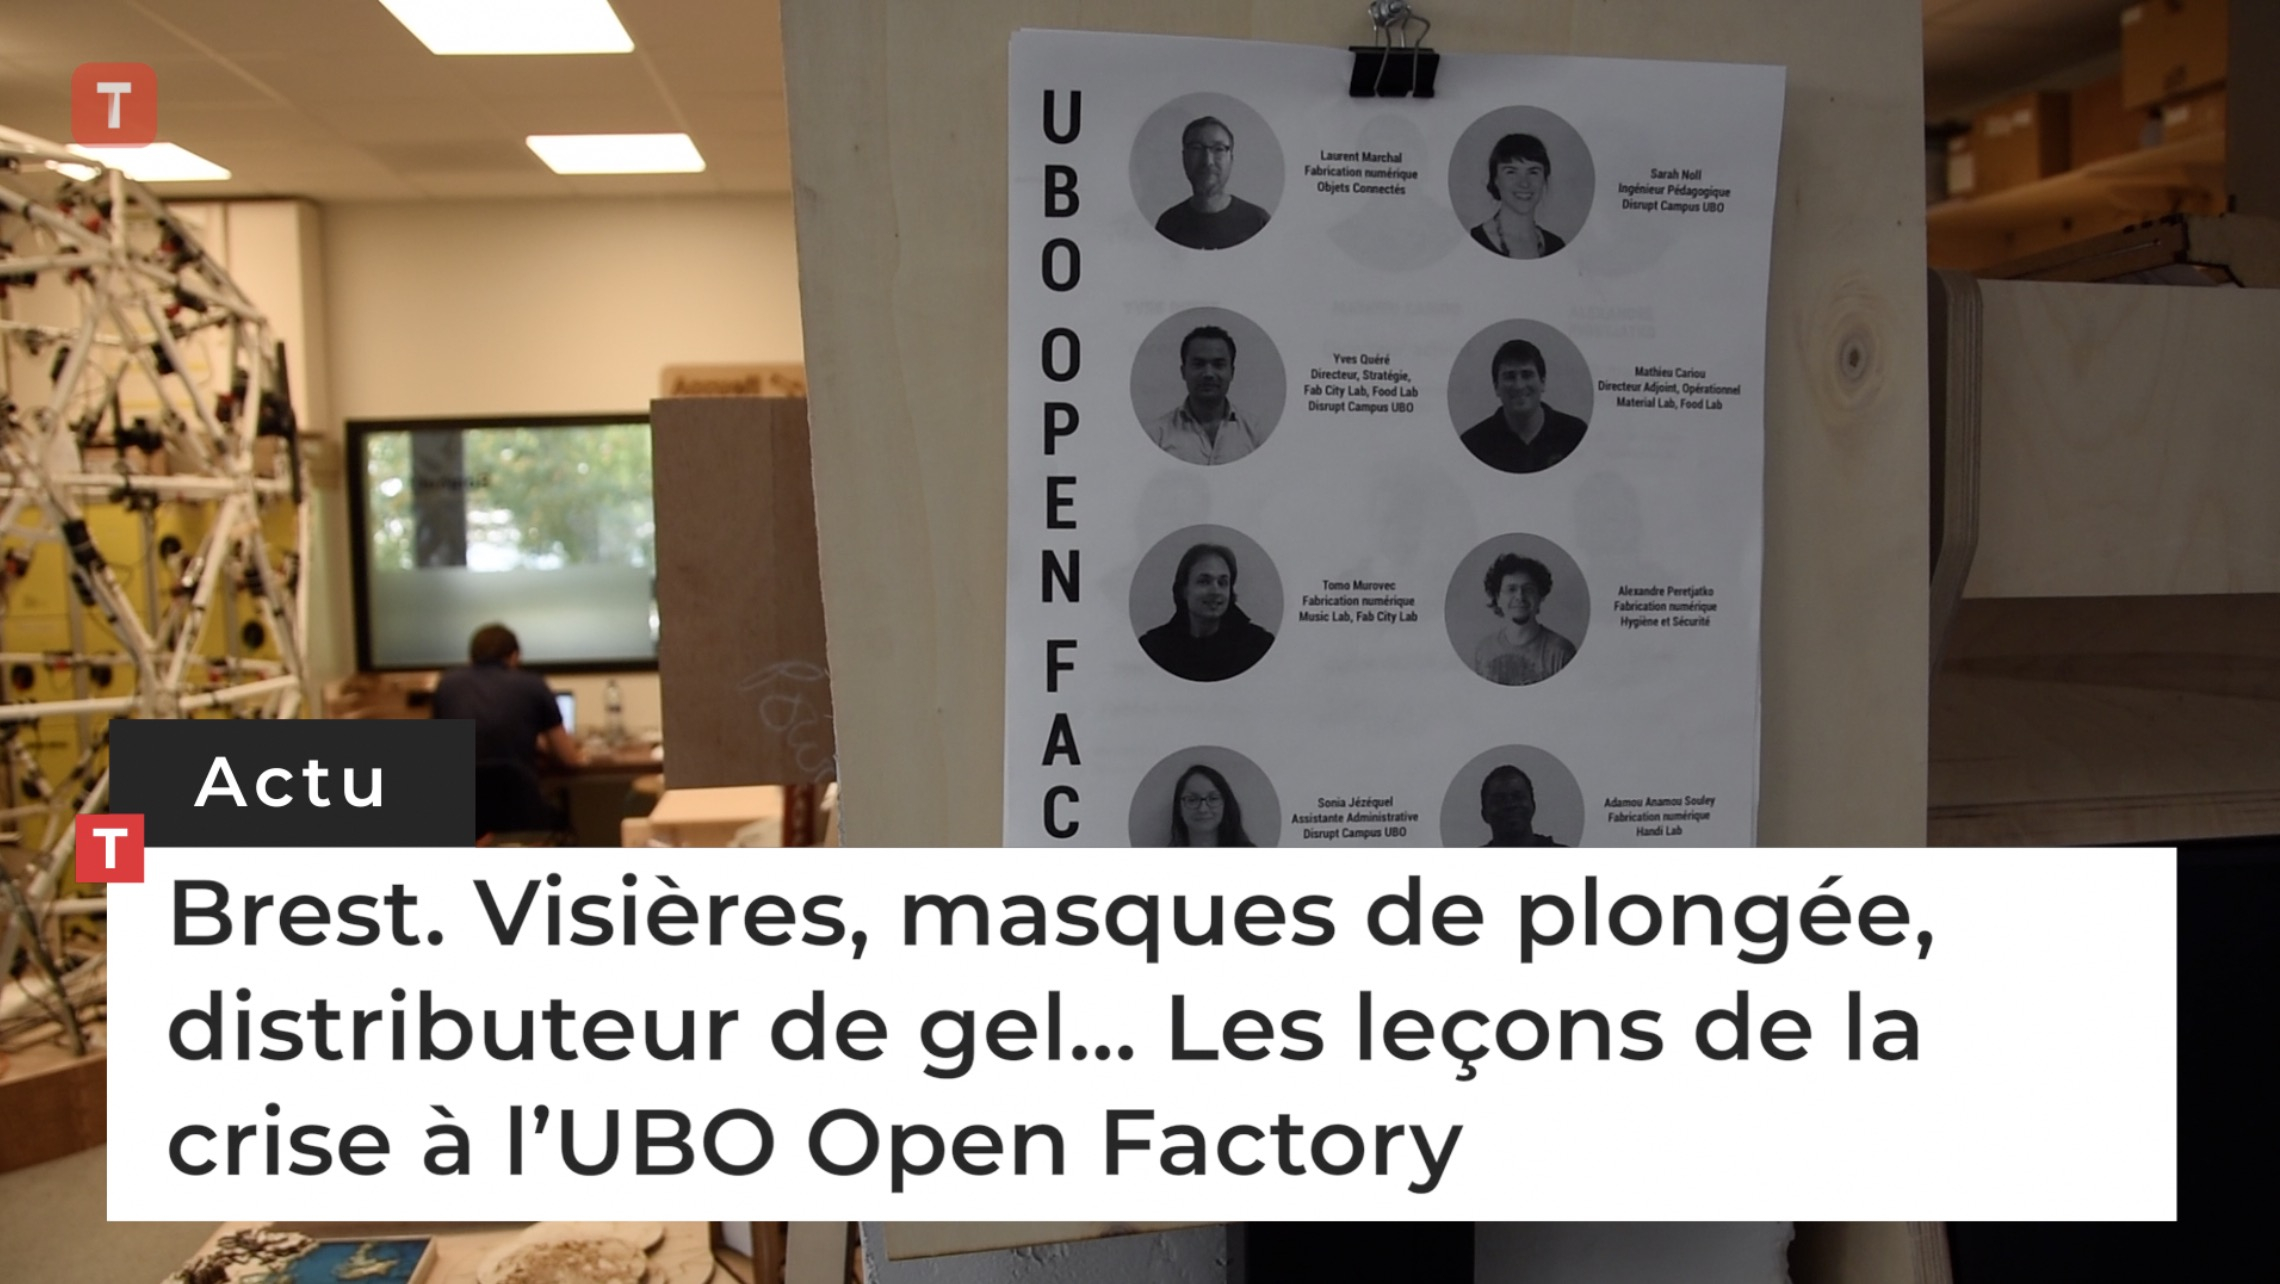 Brest. Visières, masques de plongée, distributeur de gel... Les leçons de la crise à l’UBO Open Factory (Le Télégramme)